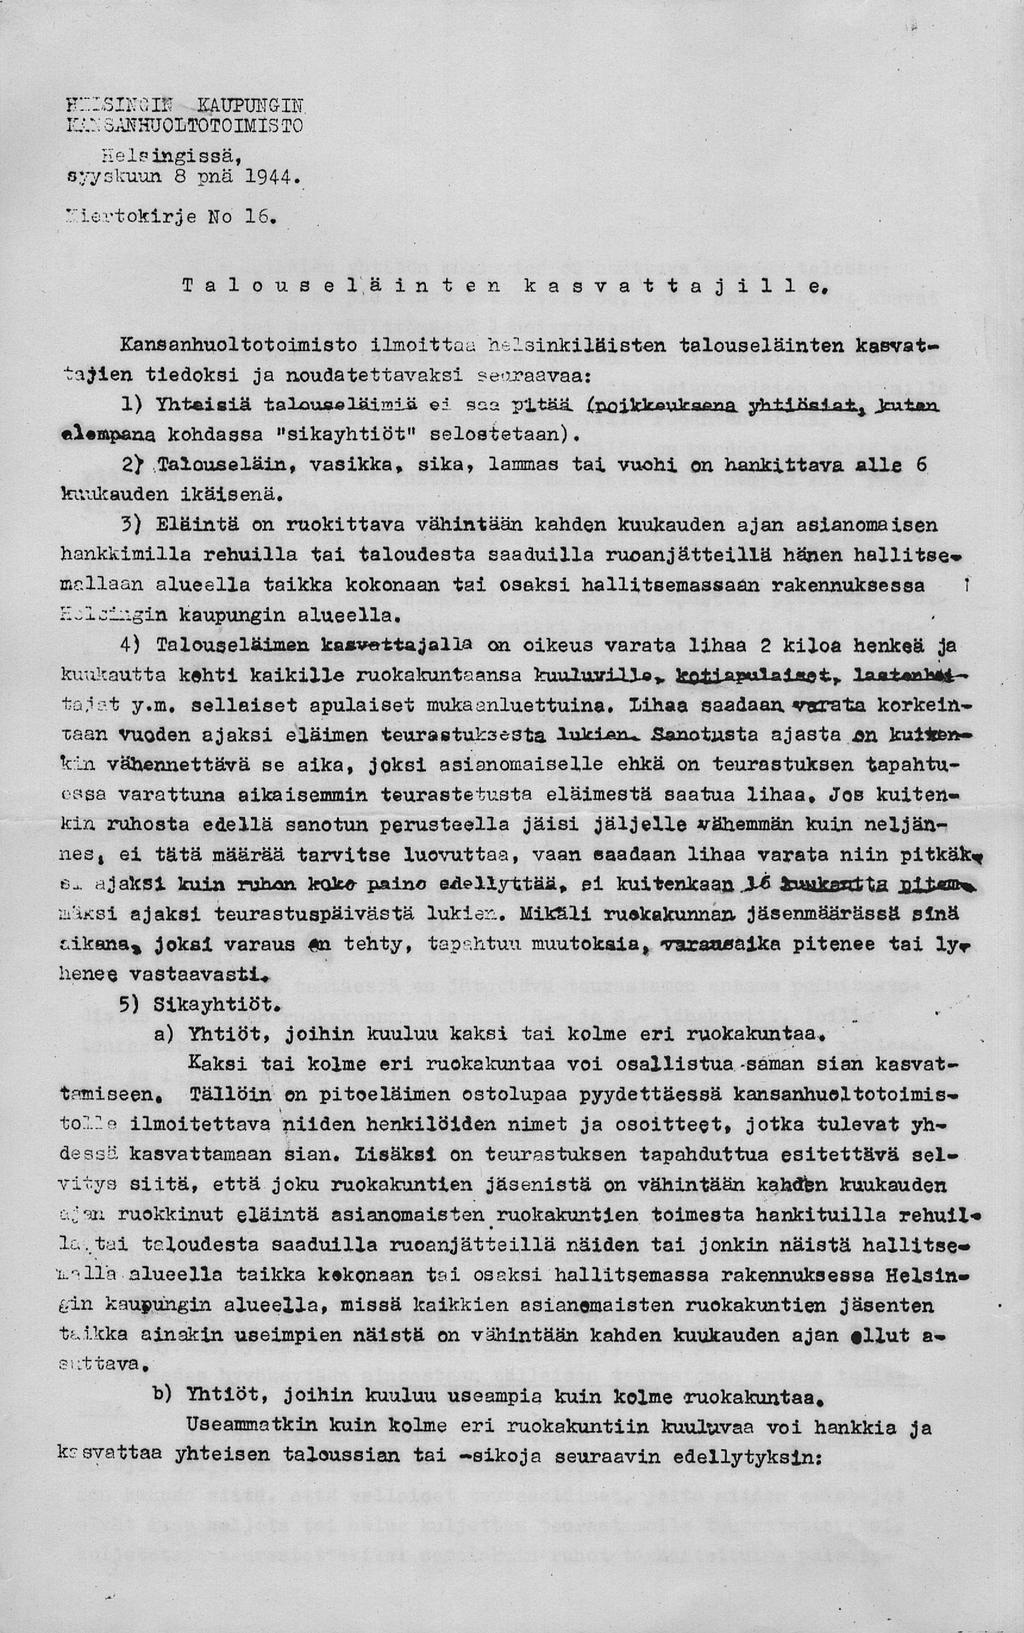 F::.:siNGiff kaupungin lu.i oanhuoltotoimis TO Helsingissä, syyskuun 8 pnä 1944. lertokirje No 18, Talouseläinten kasvattajille.